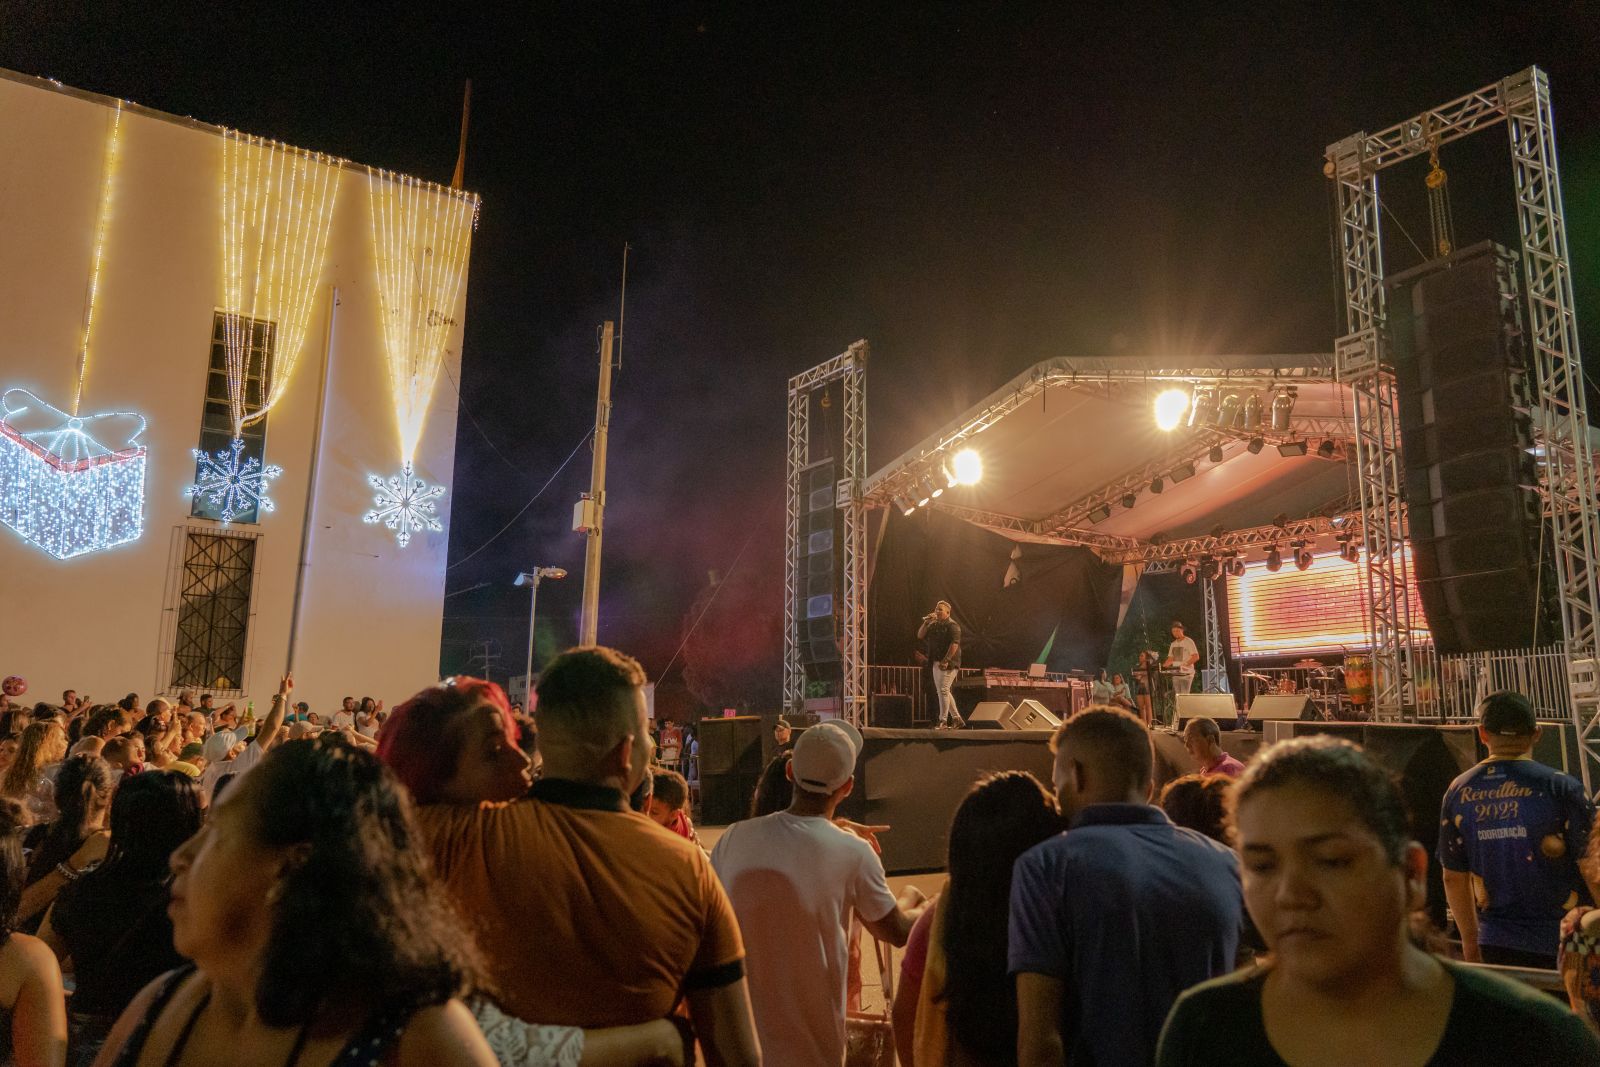 RÉVEILLON PVH: Festa da virada acontece no cruzamento da avenida Farqhuar com Sete de Setembro